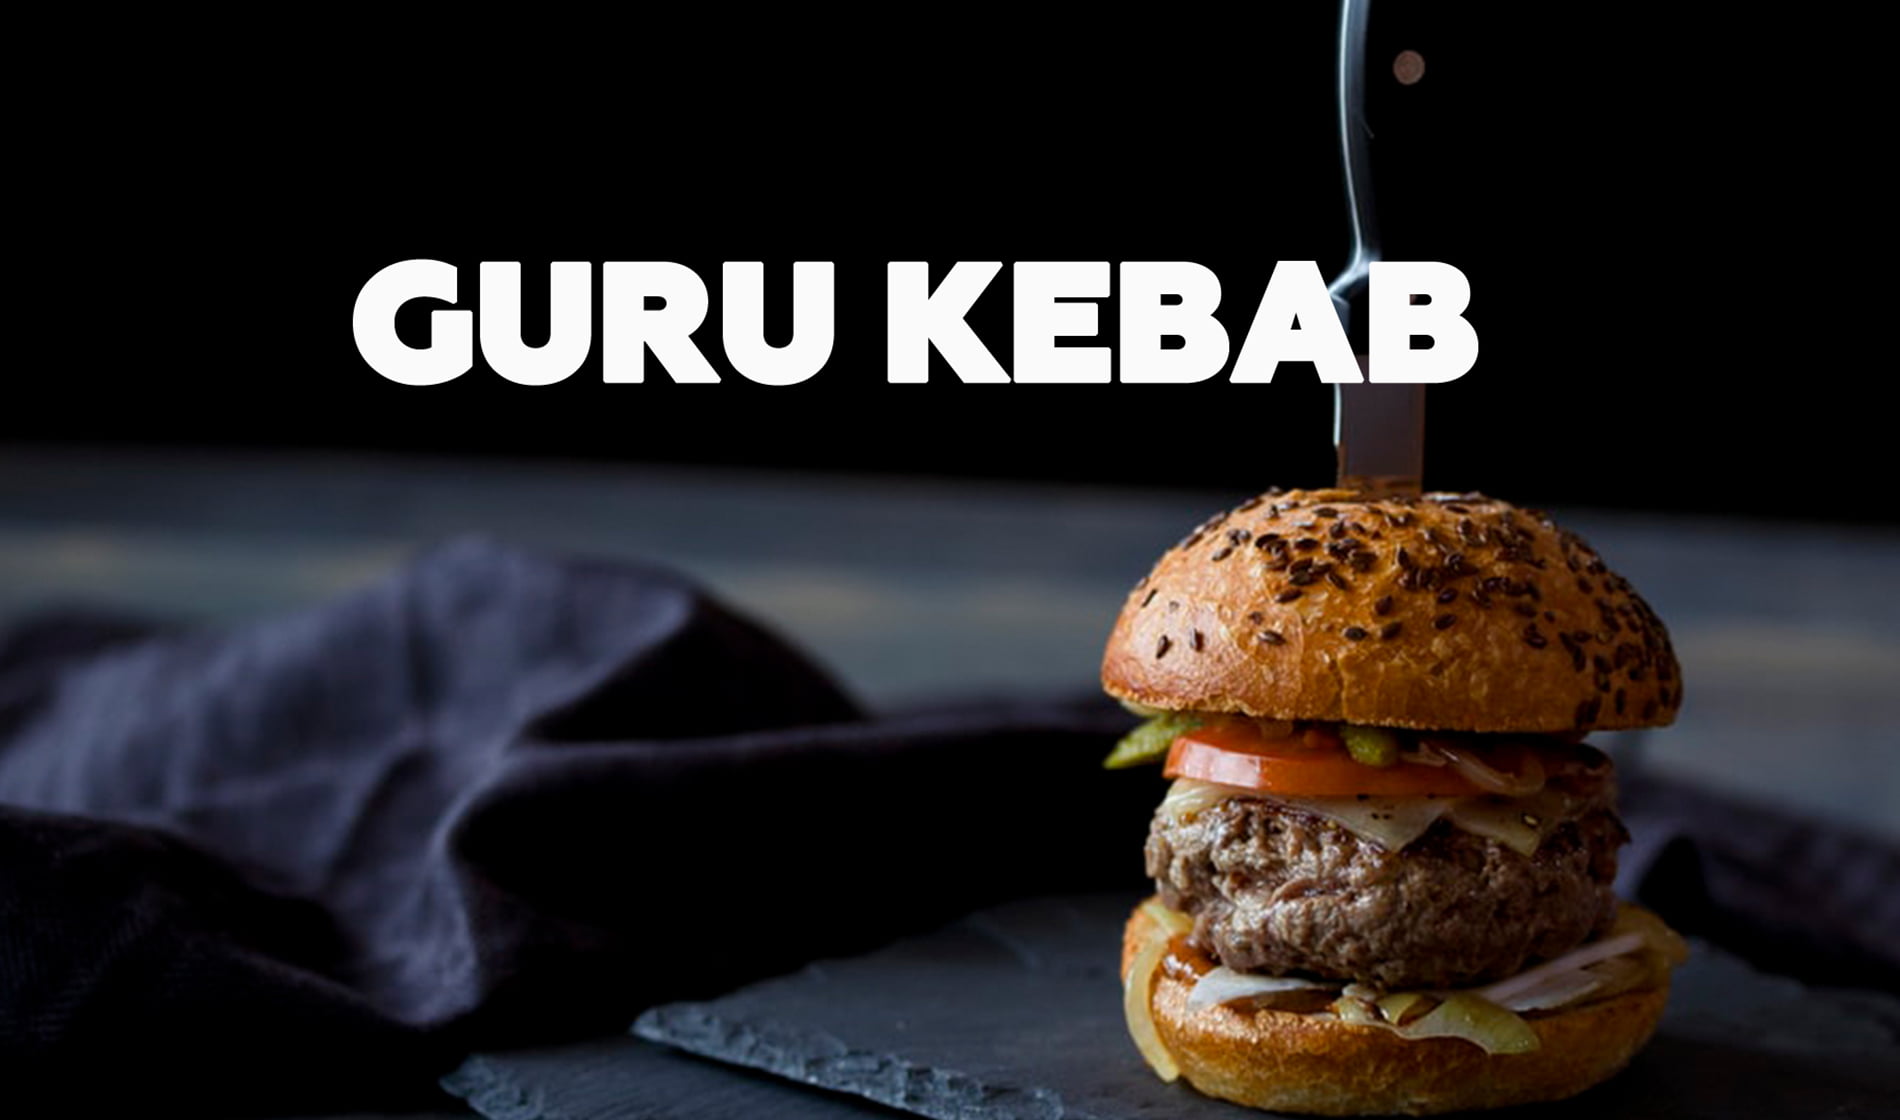 Guru Kebab by 0222 Digital Agency